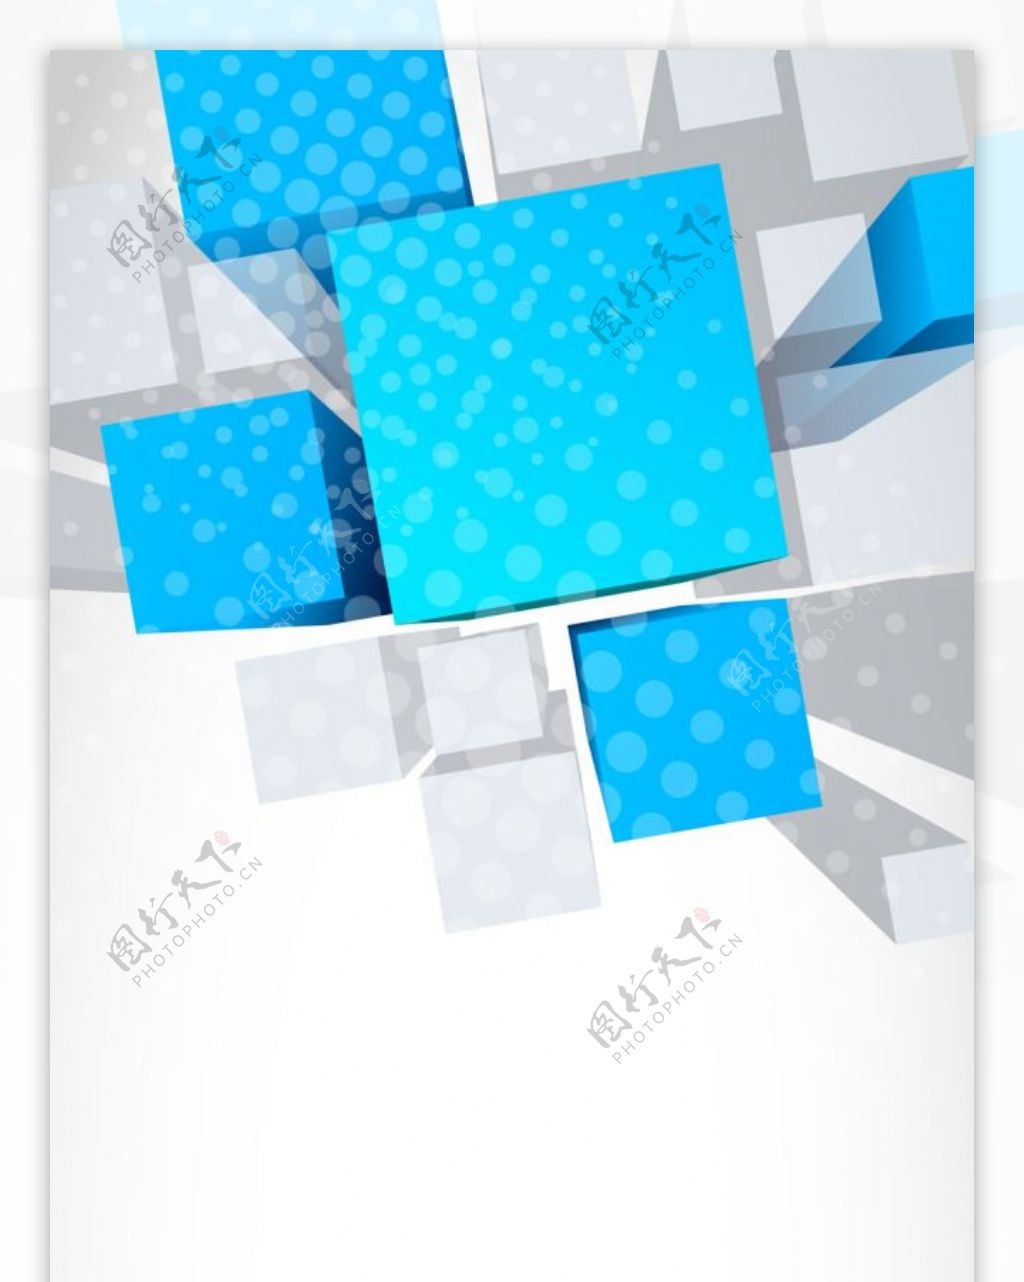 精美简约蓝色方块展架设计模板素材